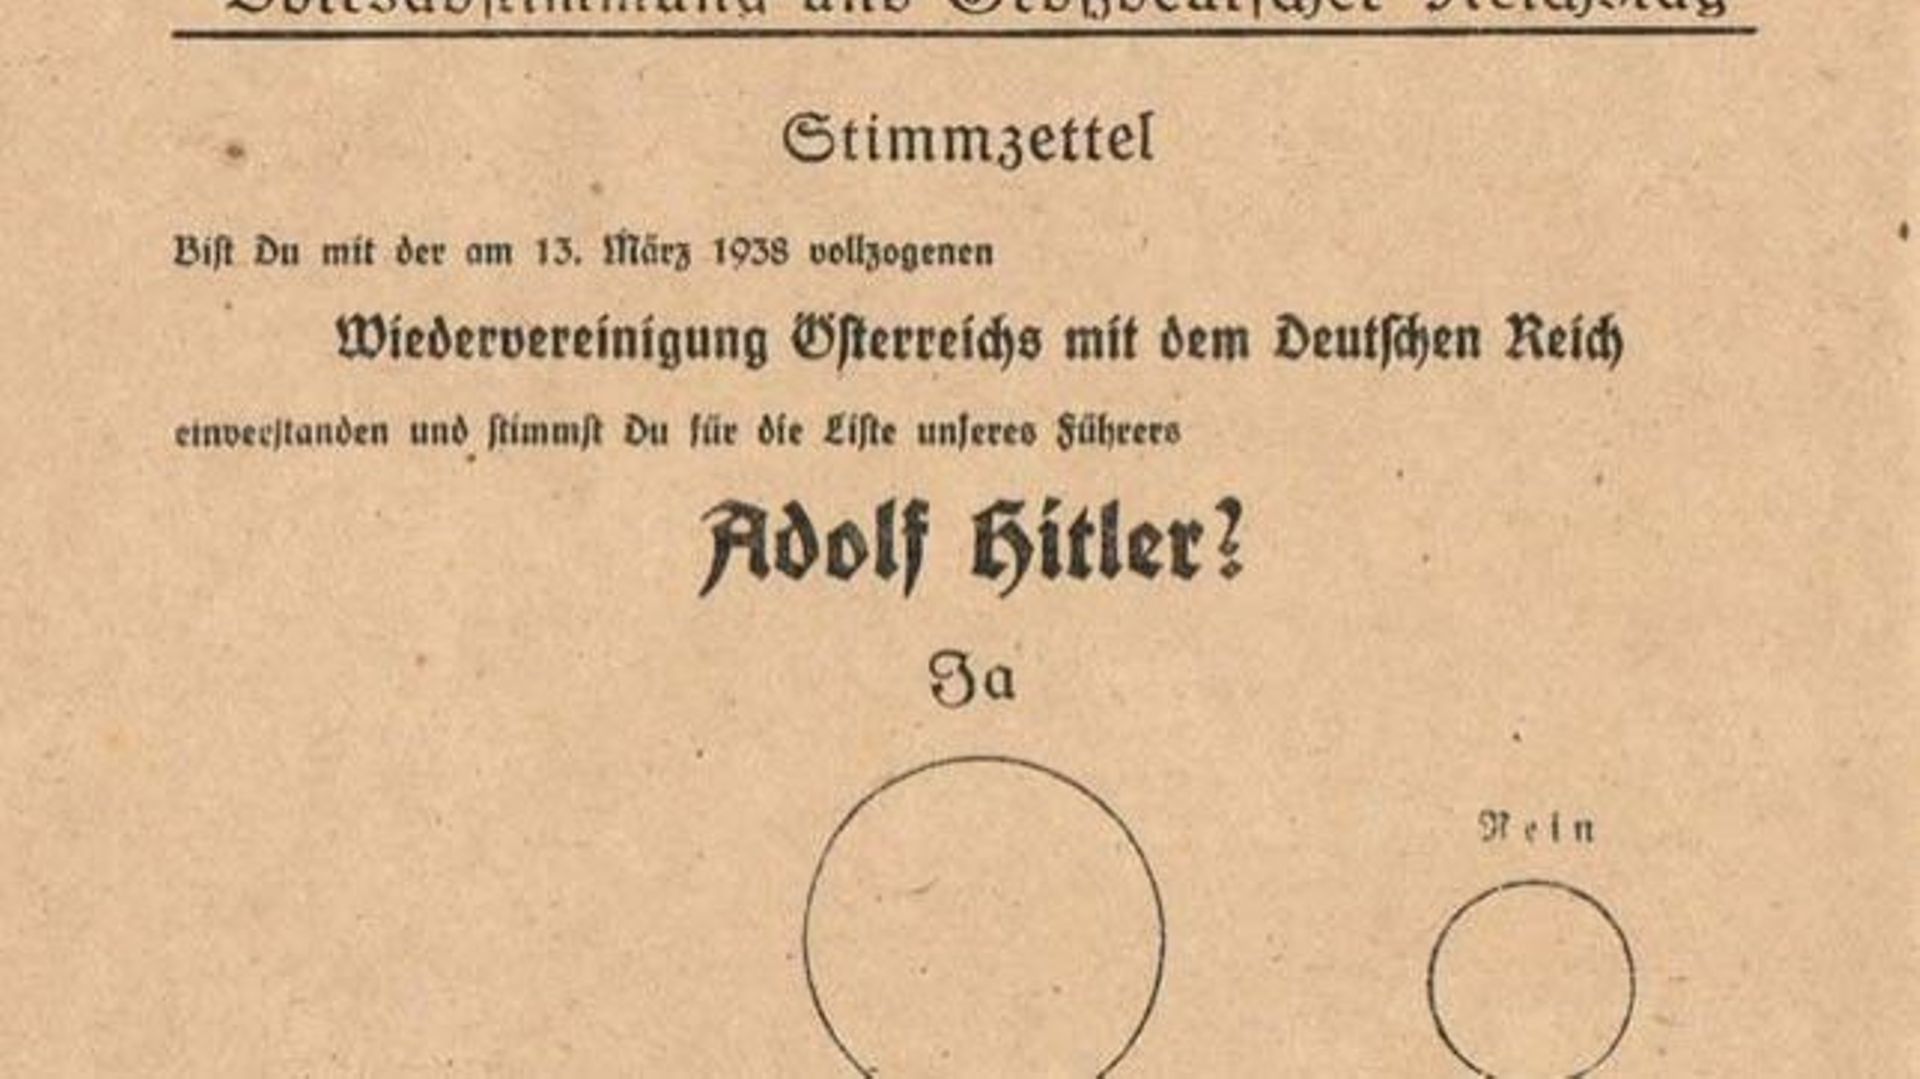 Bulletin de vote pour l’Anschluss : « Es-tu d’accord avec la réunification de l’Autriche avec le Reich allemand qui fut décrétée le 13 mars 1938, et votes-tu pour le parti de notre chef Adolf Hitler ? ». Dans le grand cercle, c’est "Ja", le petit "Nein"…